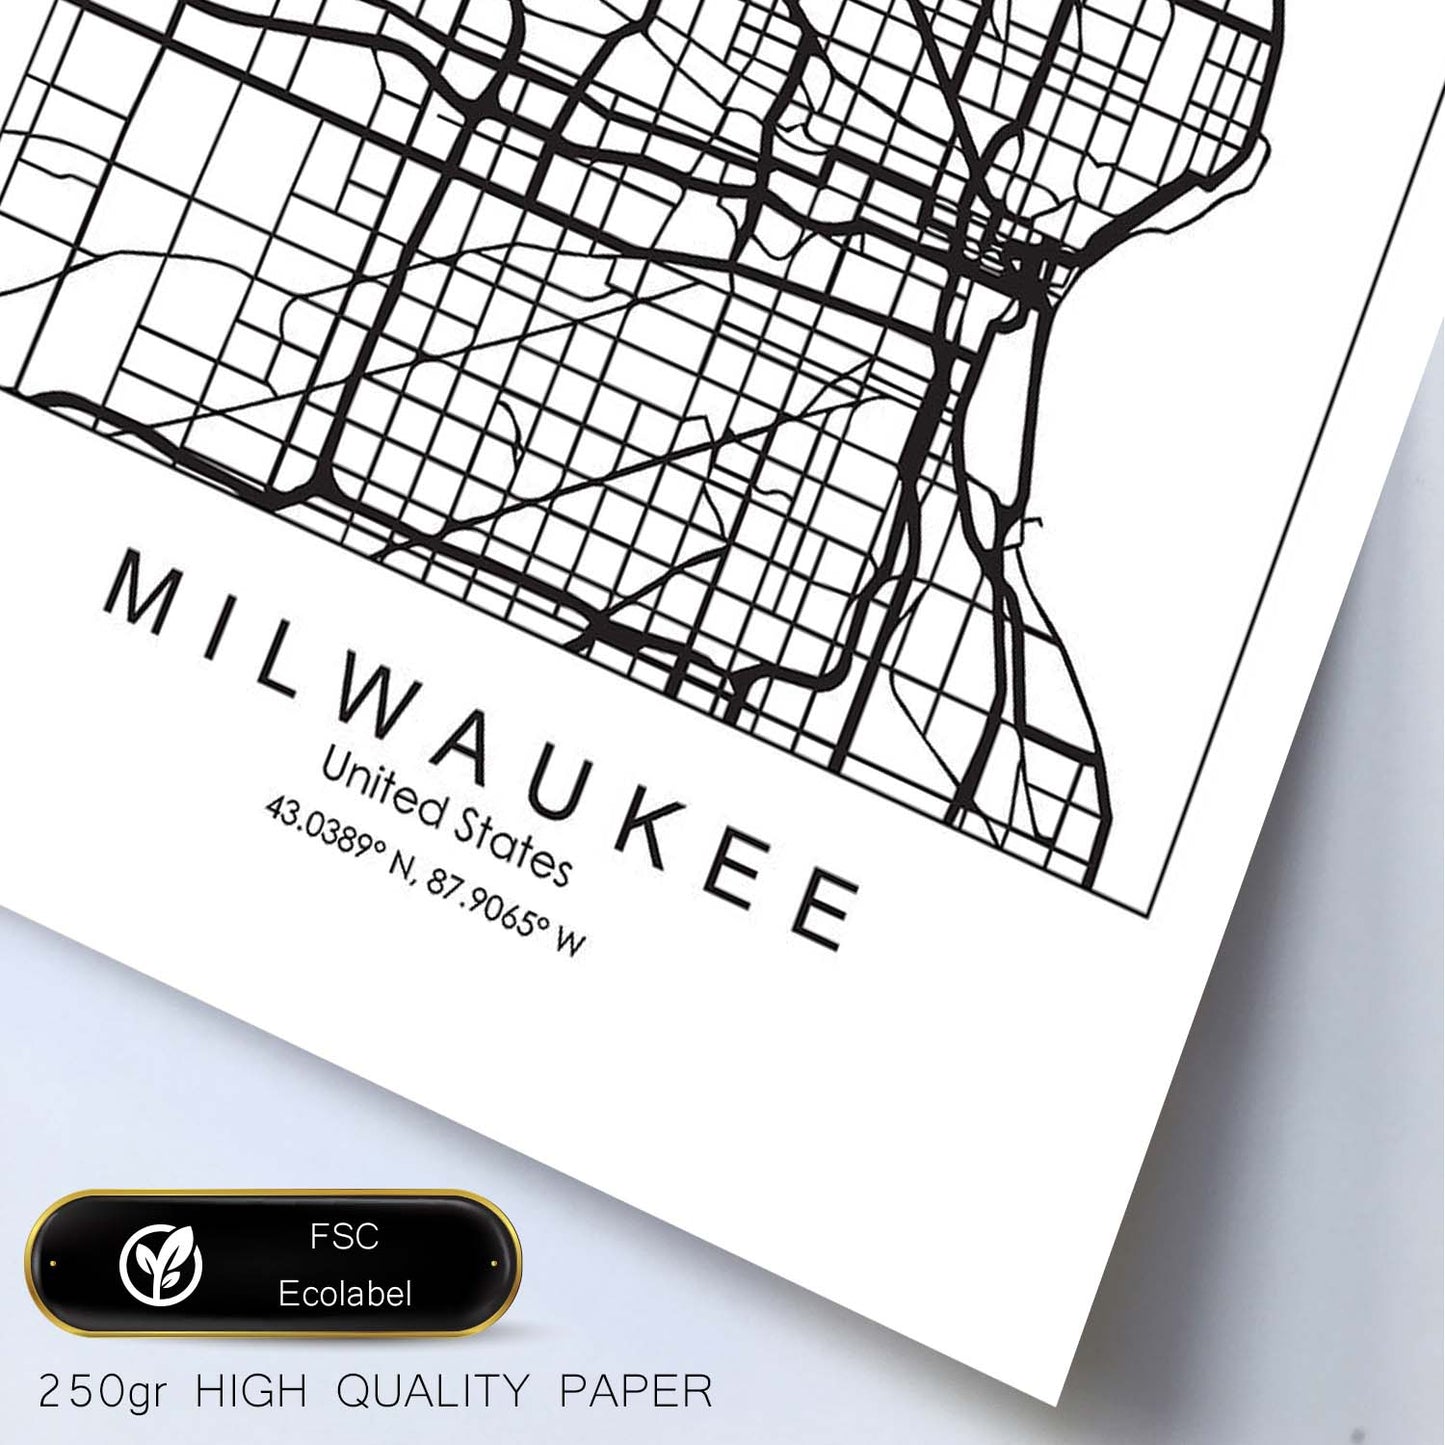 Poster con mapa de Milwaukee. Lámina de Estados Unidos, con imágenes de mapas y carreteras-Artwork-Nacnic-Nacnic Estudio SL